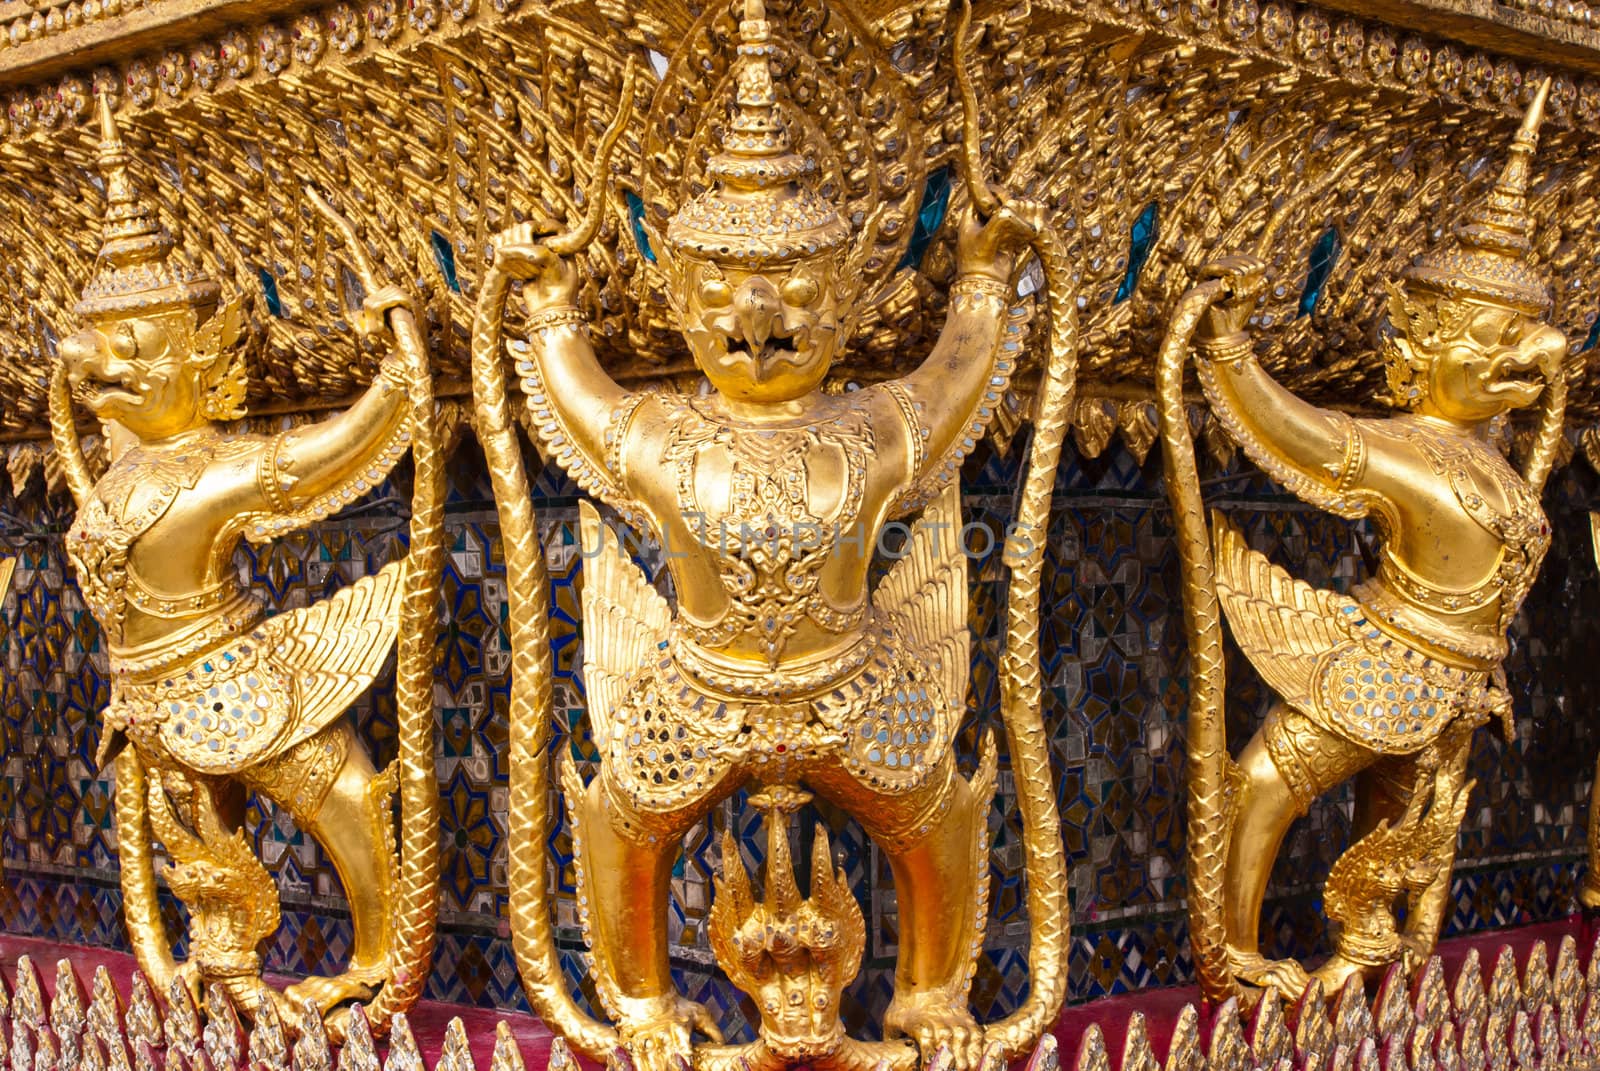 Golden Garuda at the grand palace, Bangkok, Thailand